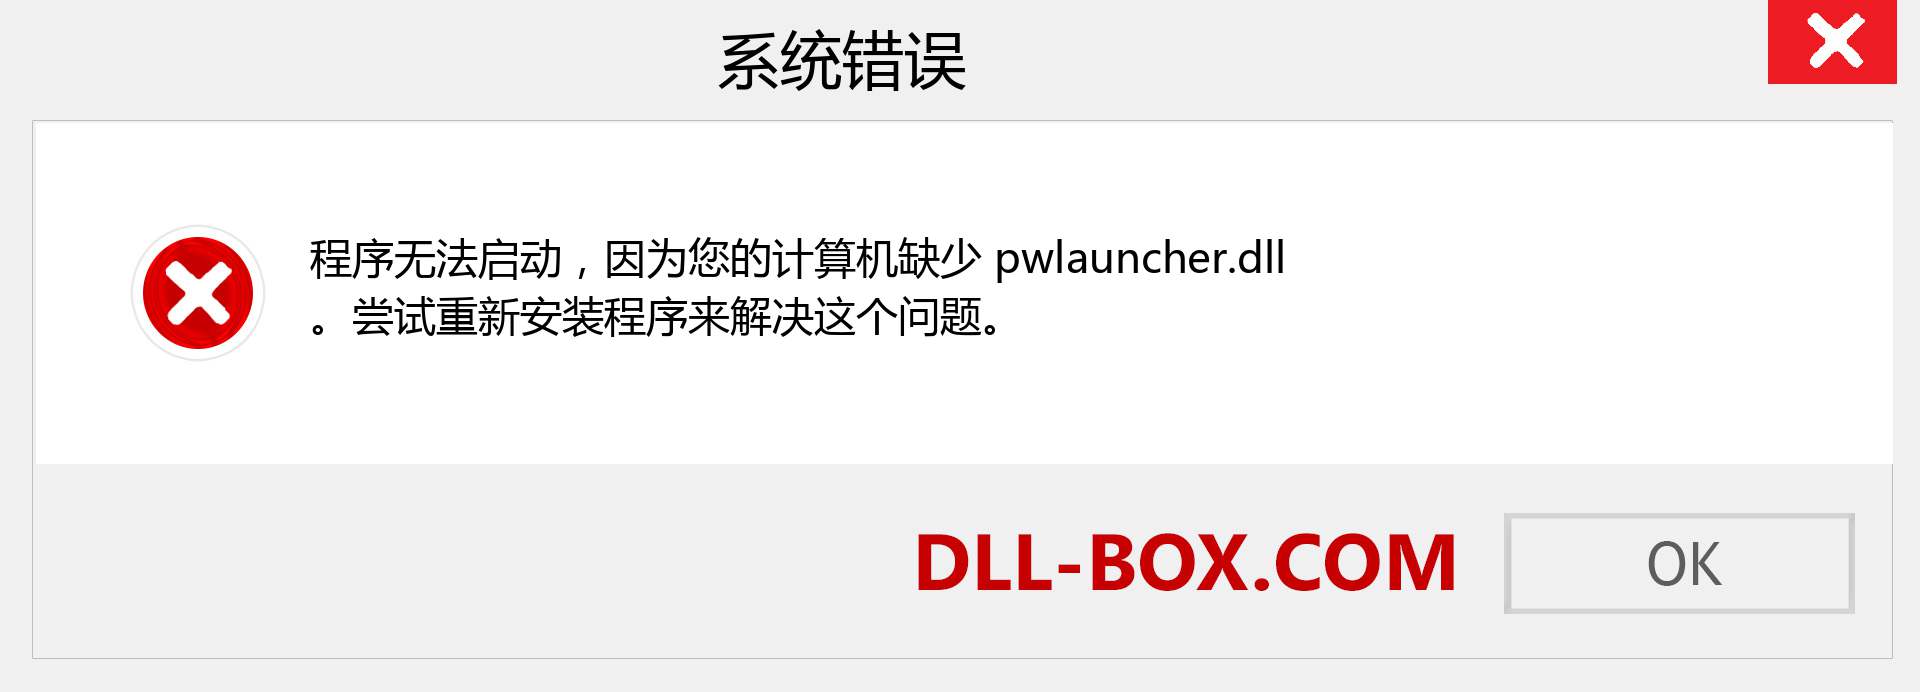 pwlauncher.dll 文件丢失？。 适用于 Windows 7、8、10 的下载 - 修复 Windows、照片、图像上的 pwlauncher dll 丢失错误